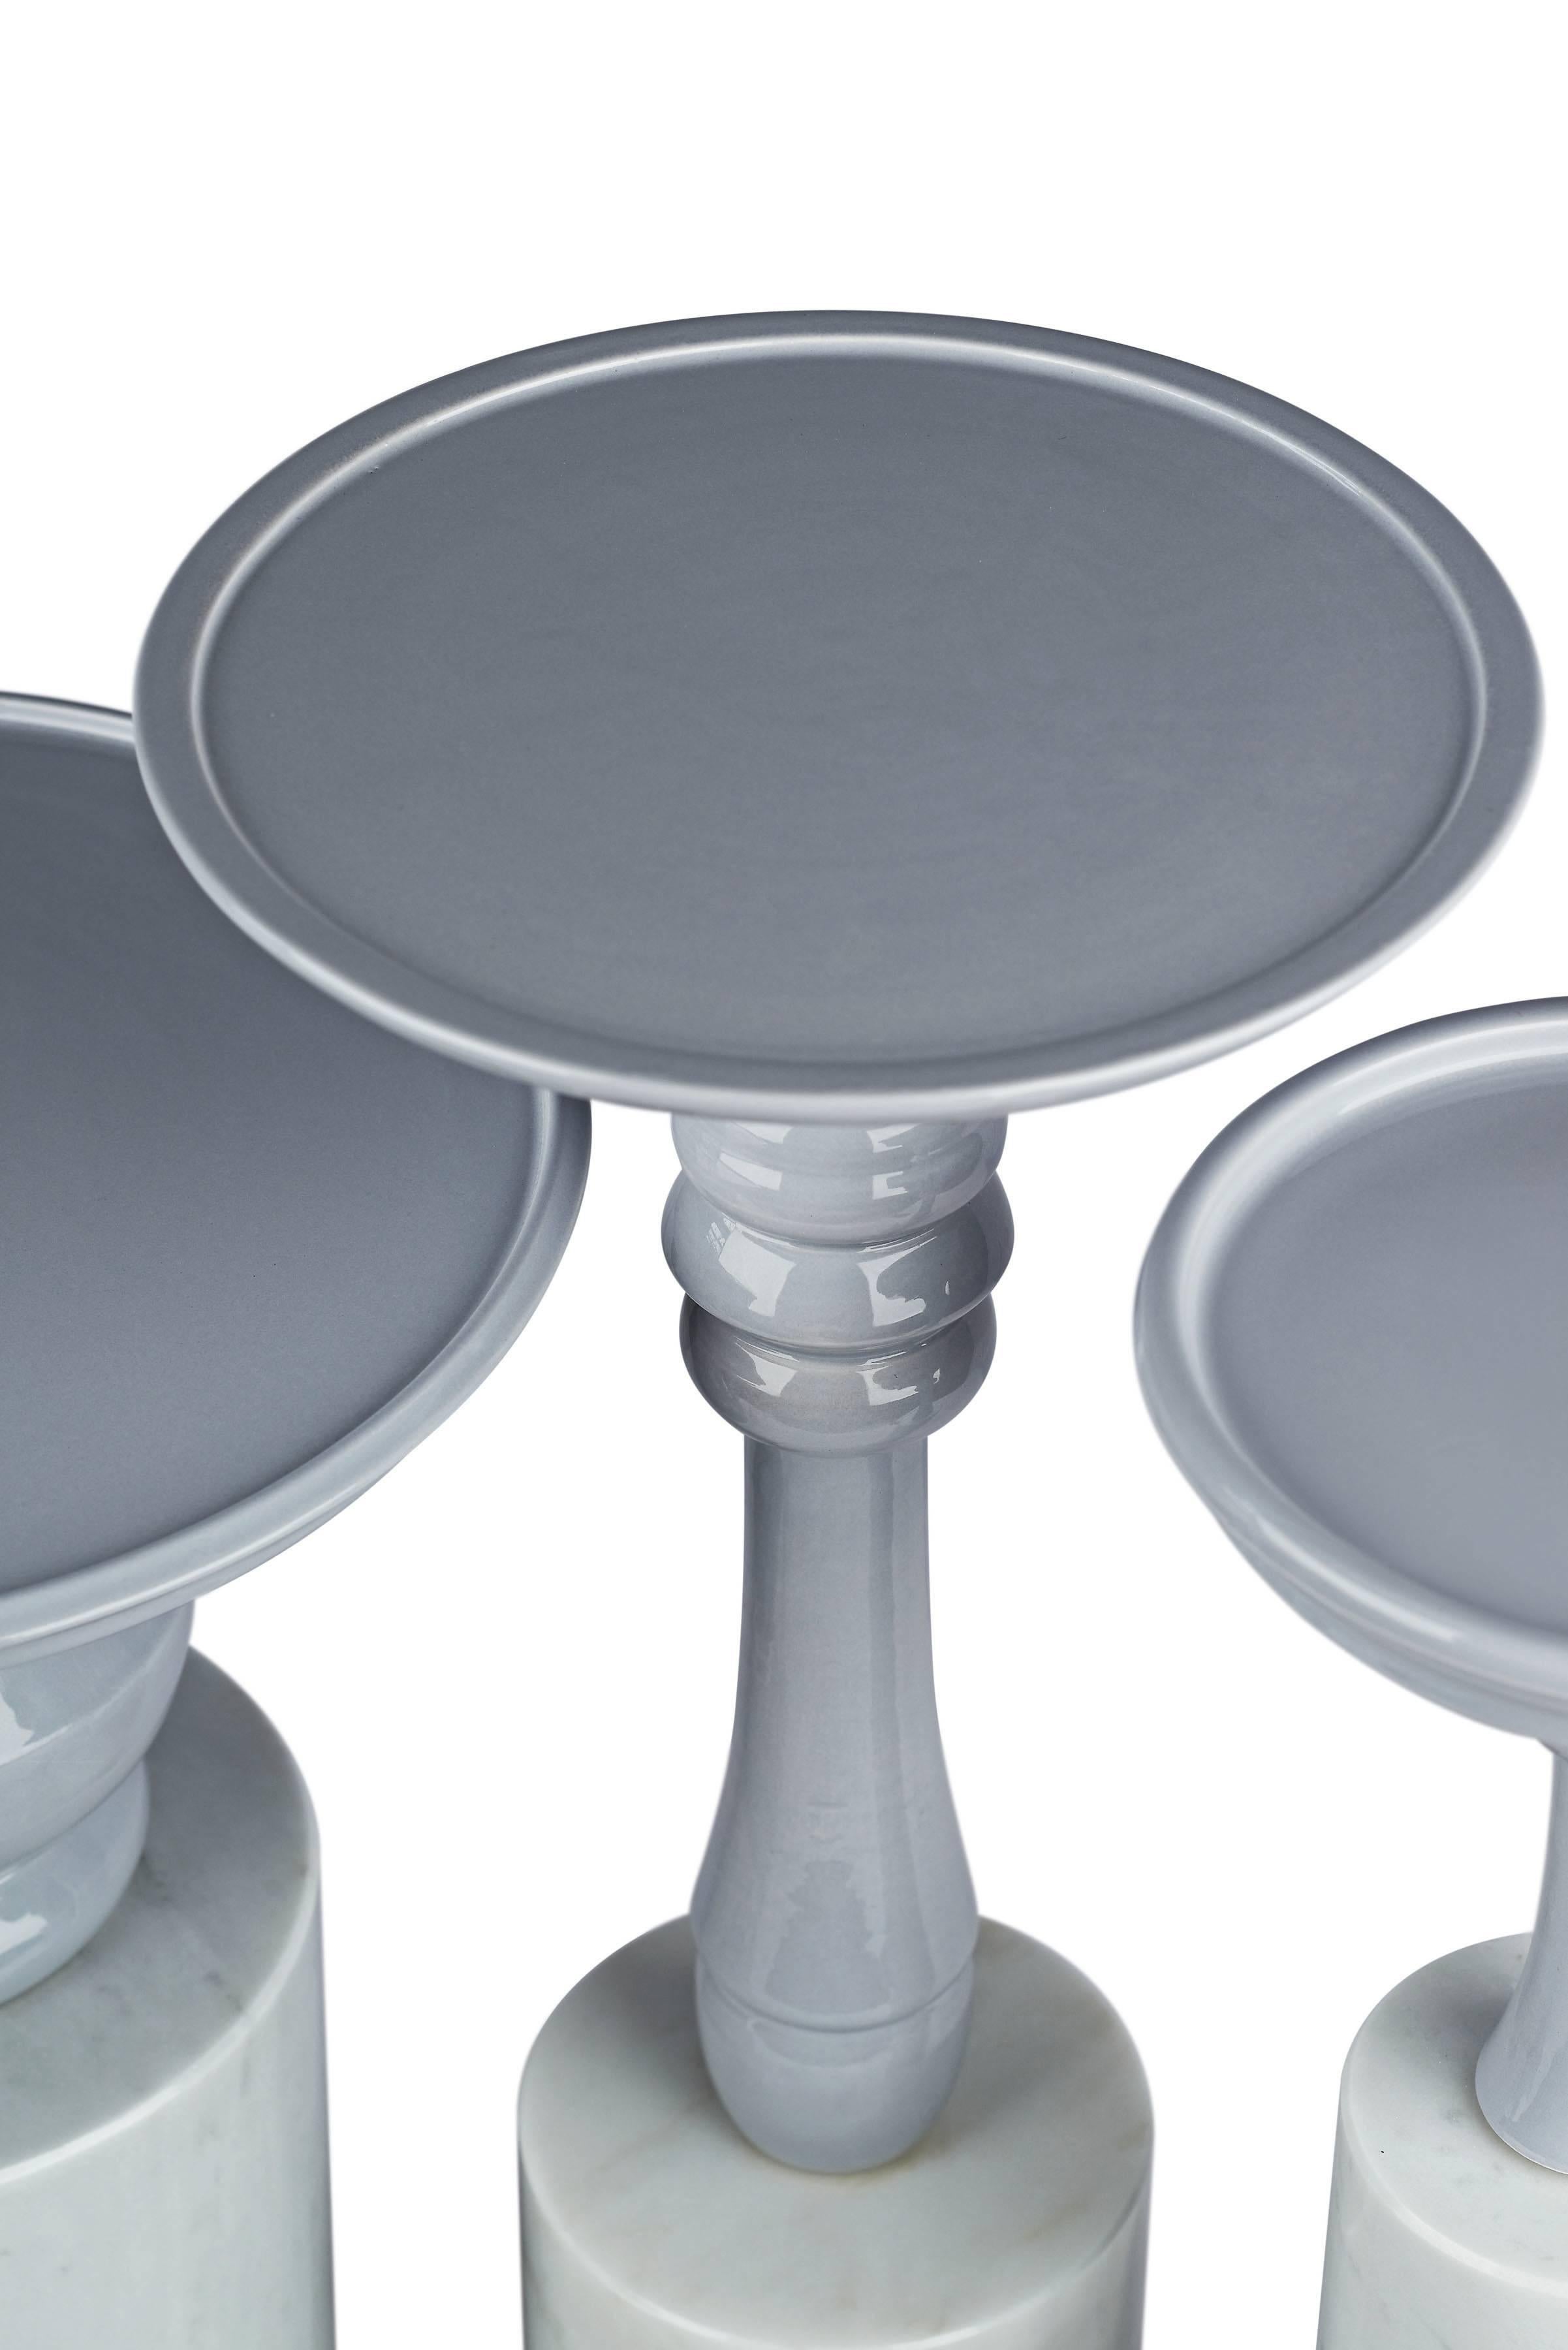 Dieses Set aus vier kleinen Tischen ist aus handglasierter Keramik und Carrara-Marmor gefertigt. Die Gesamtmaße der vier Tische betragen zusammen ca. 20